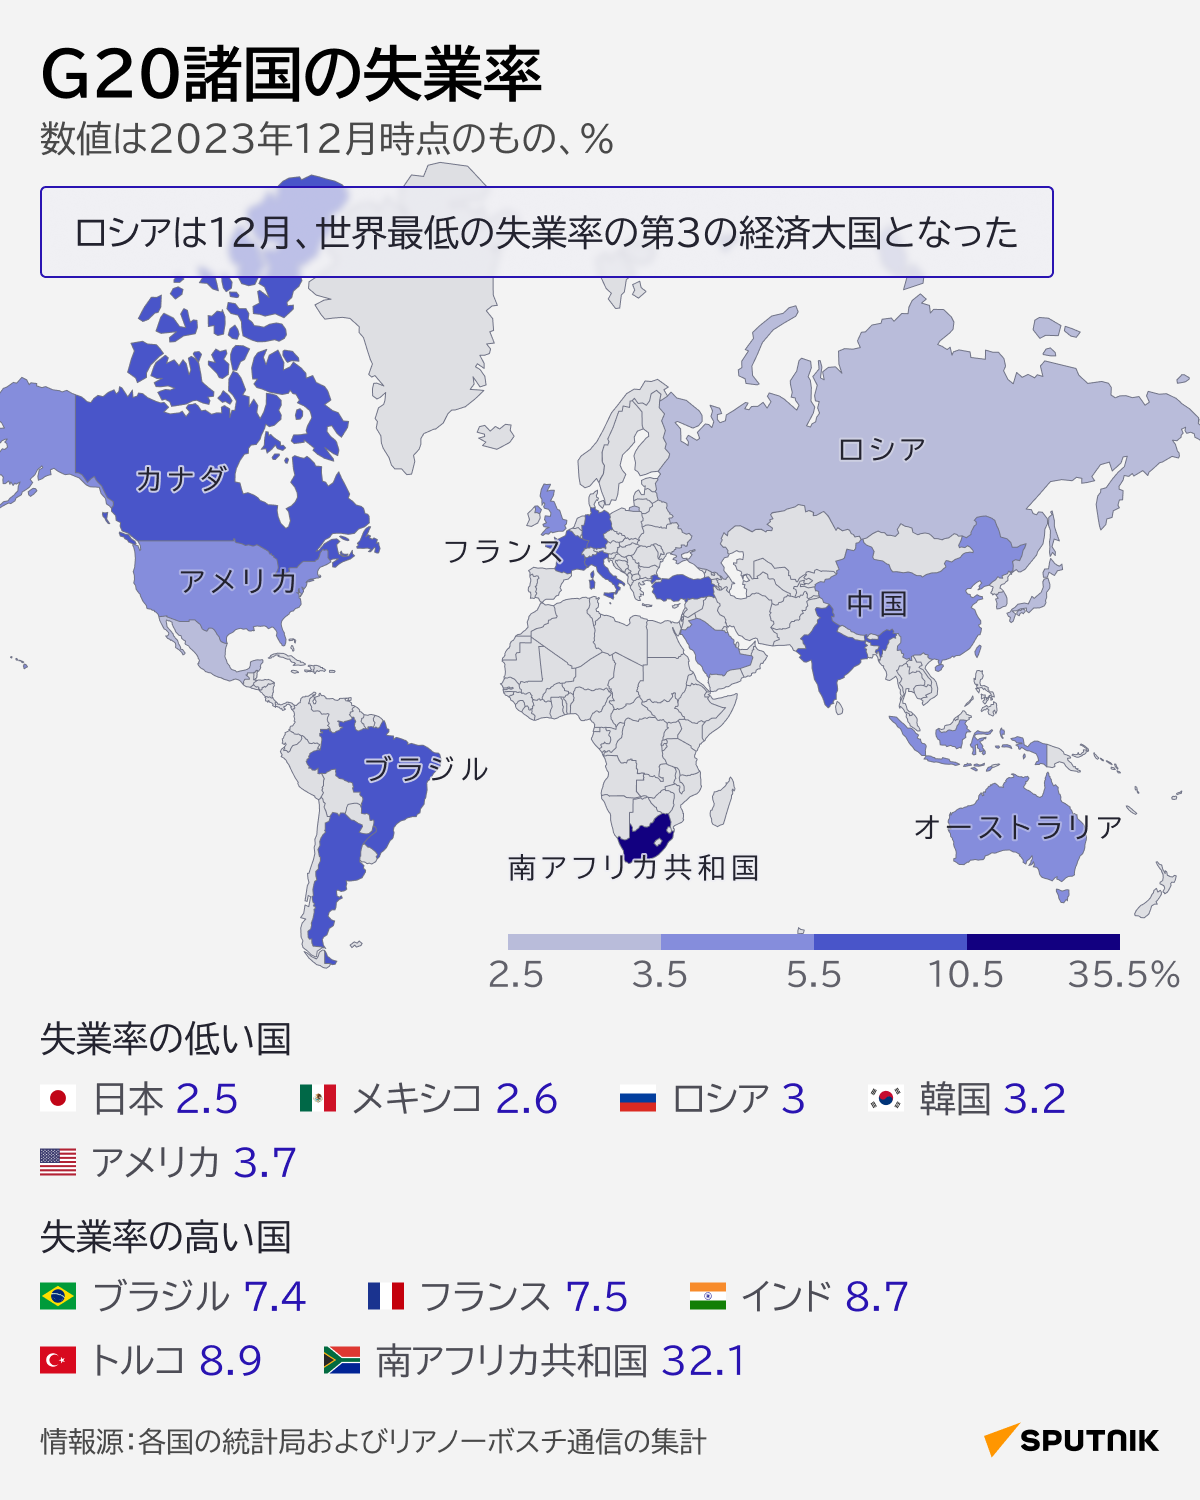 数字で見るG20諸国の失業率 - Sputnik 日本